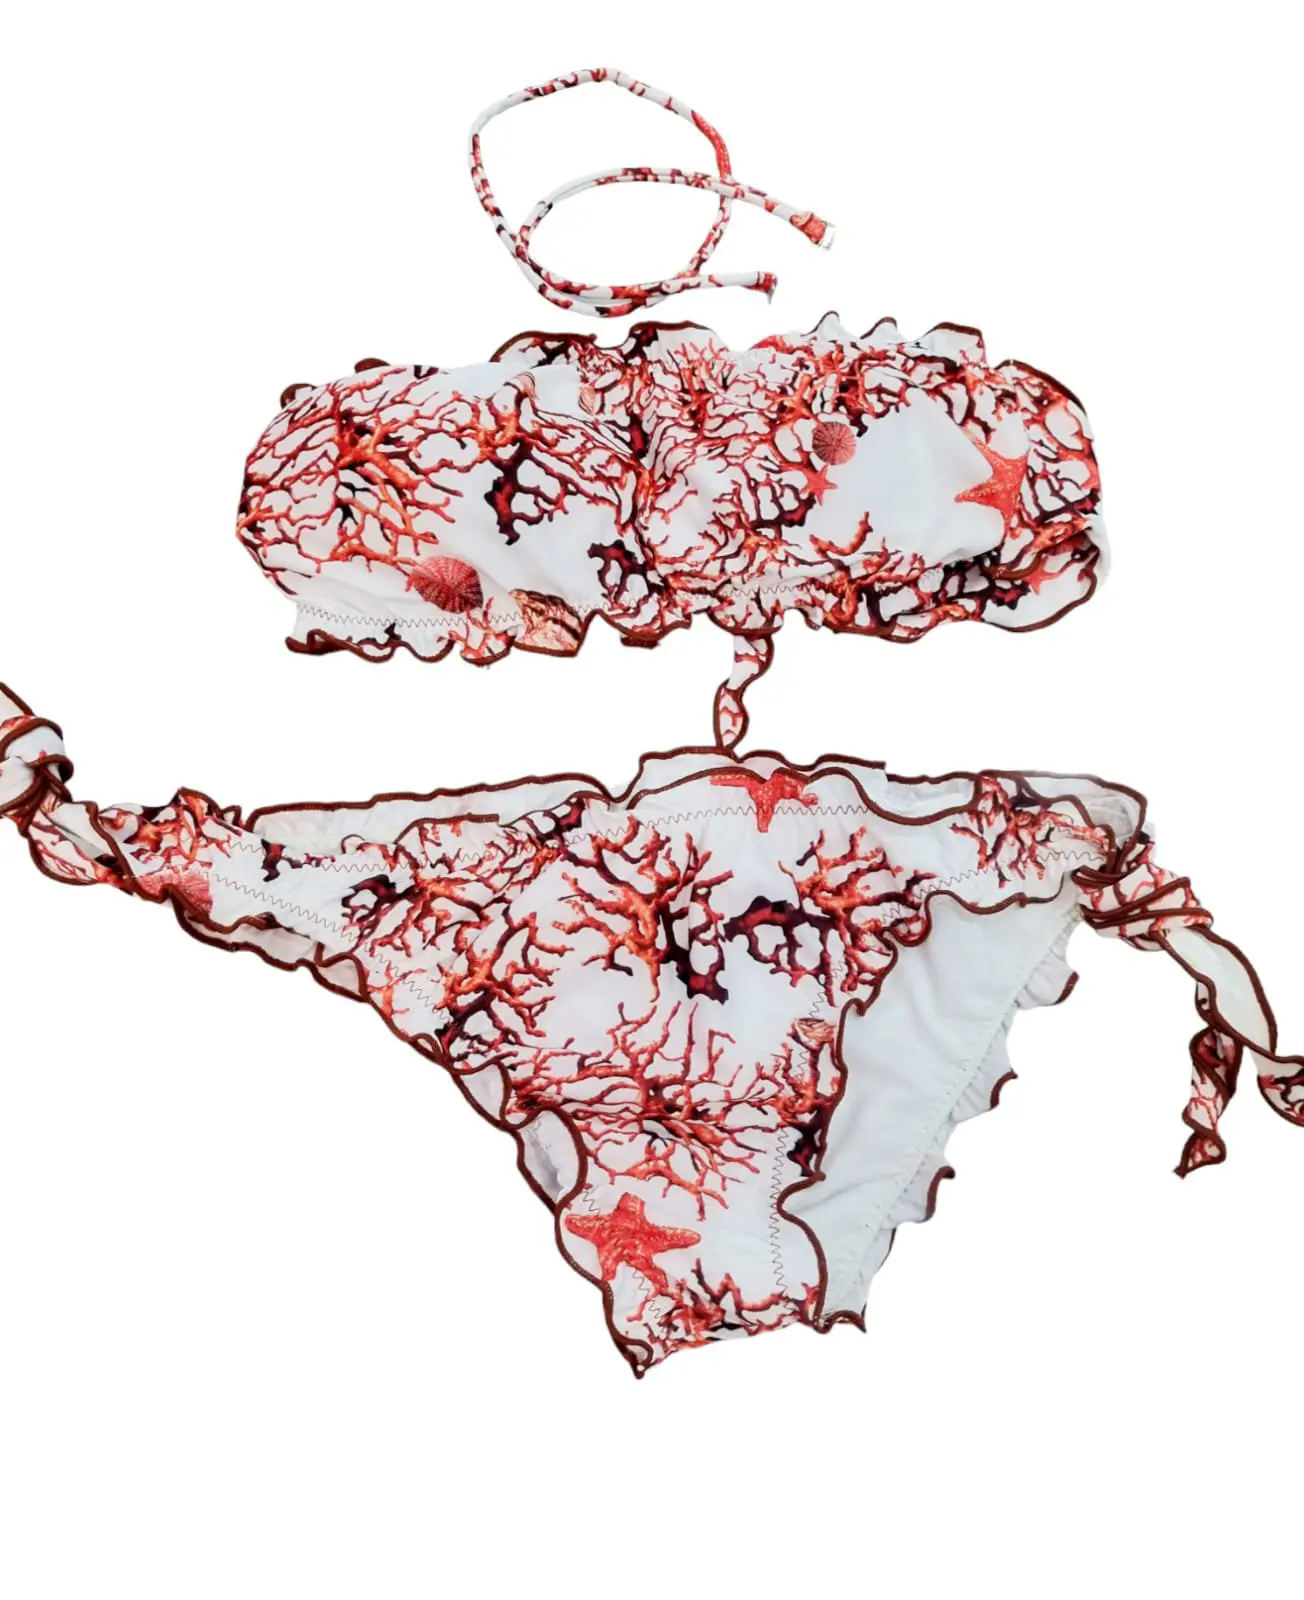 Bikini a fascia imbottita ,possibilità di mettere laccetto, slip regolabile con riccio.Fantasia corallo rosso